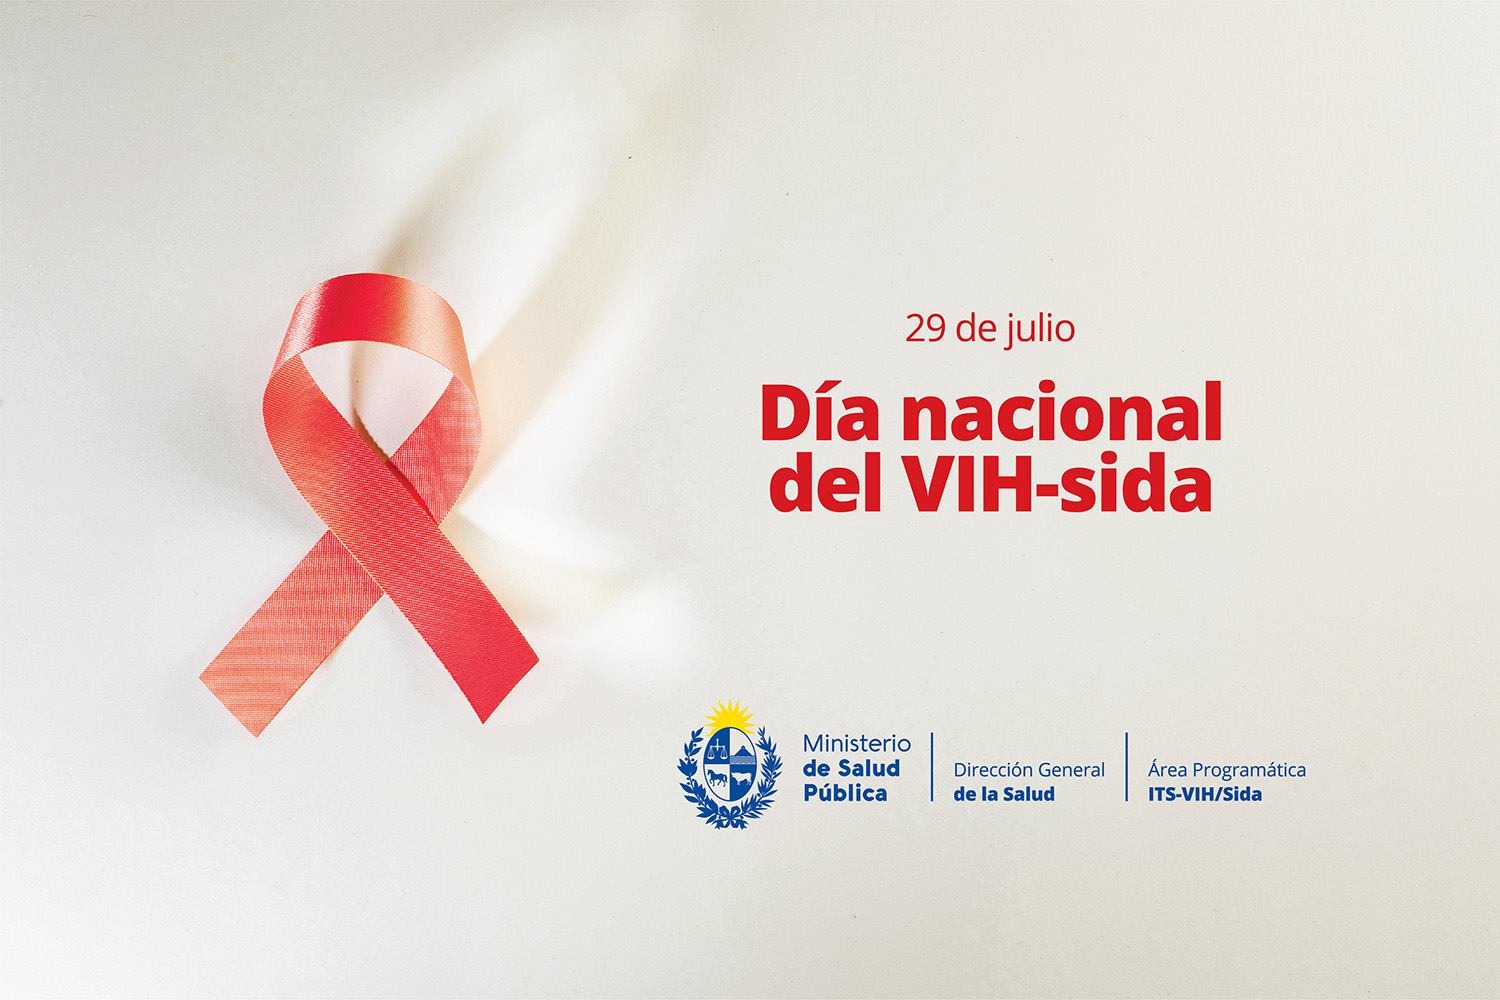 Día nacional del VIH-sida